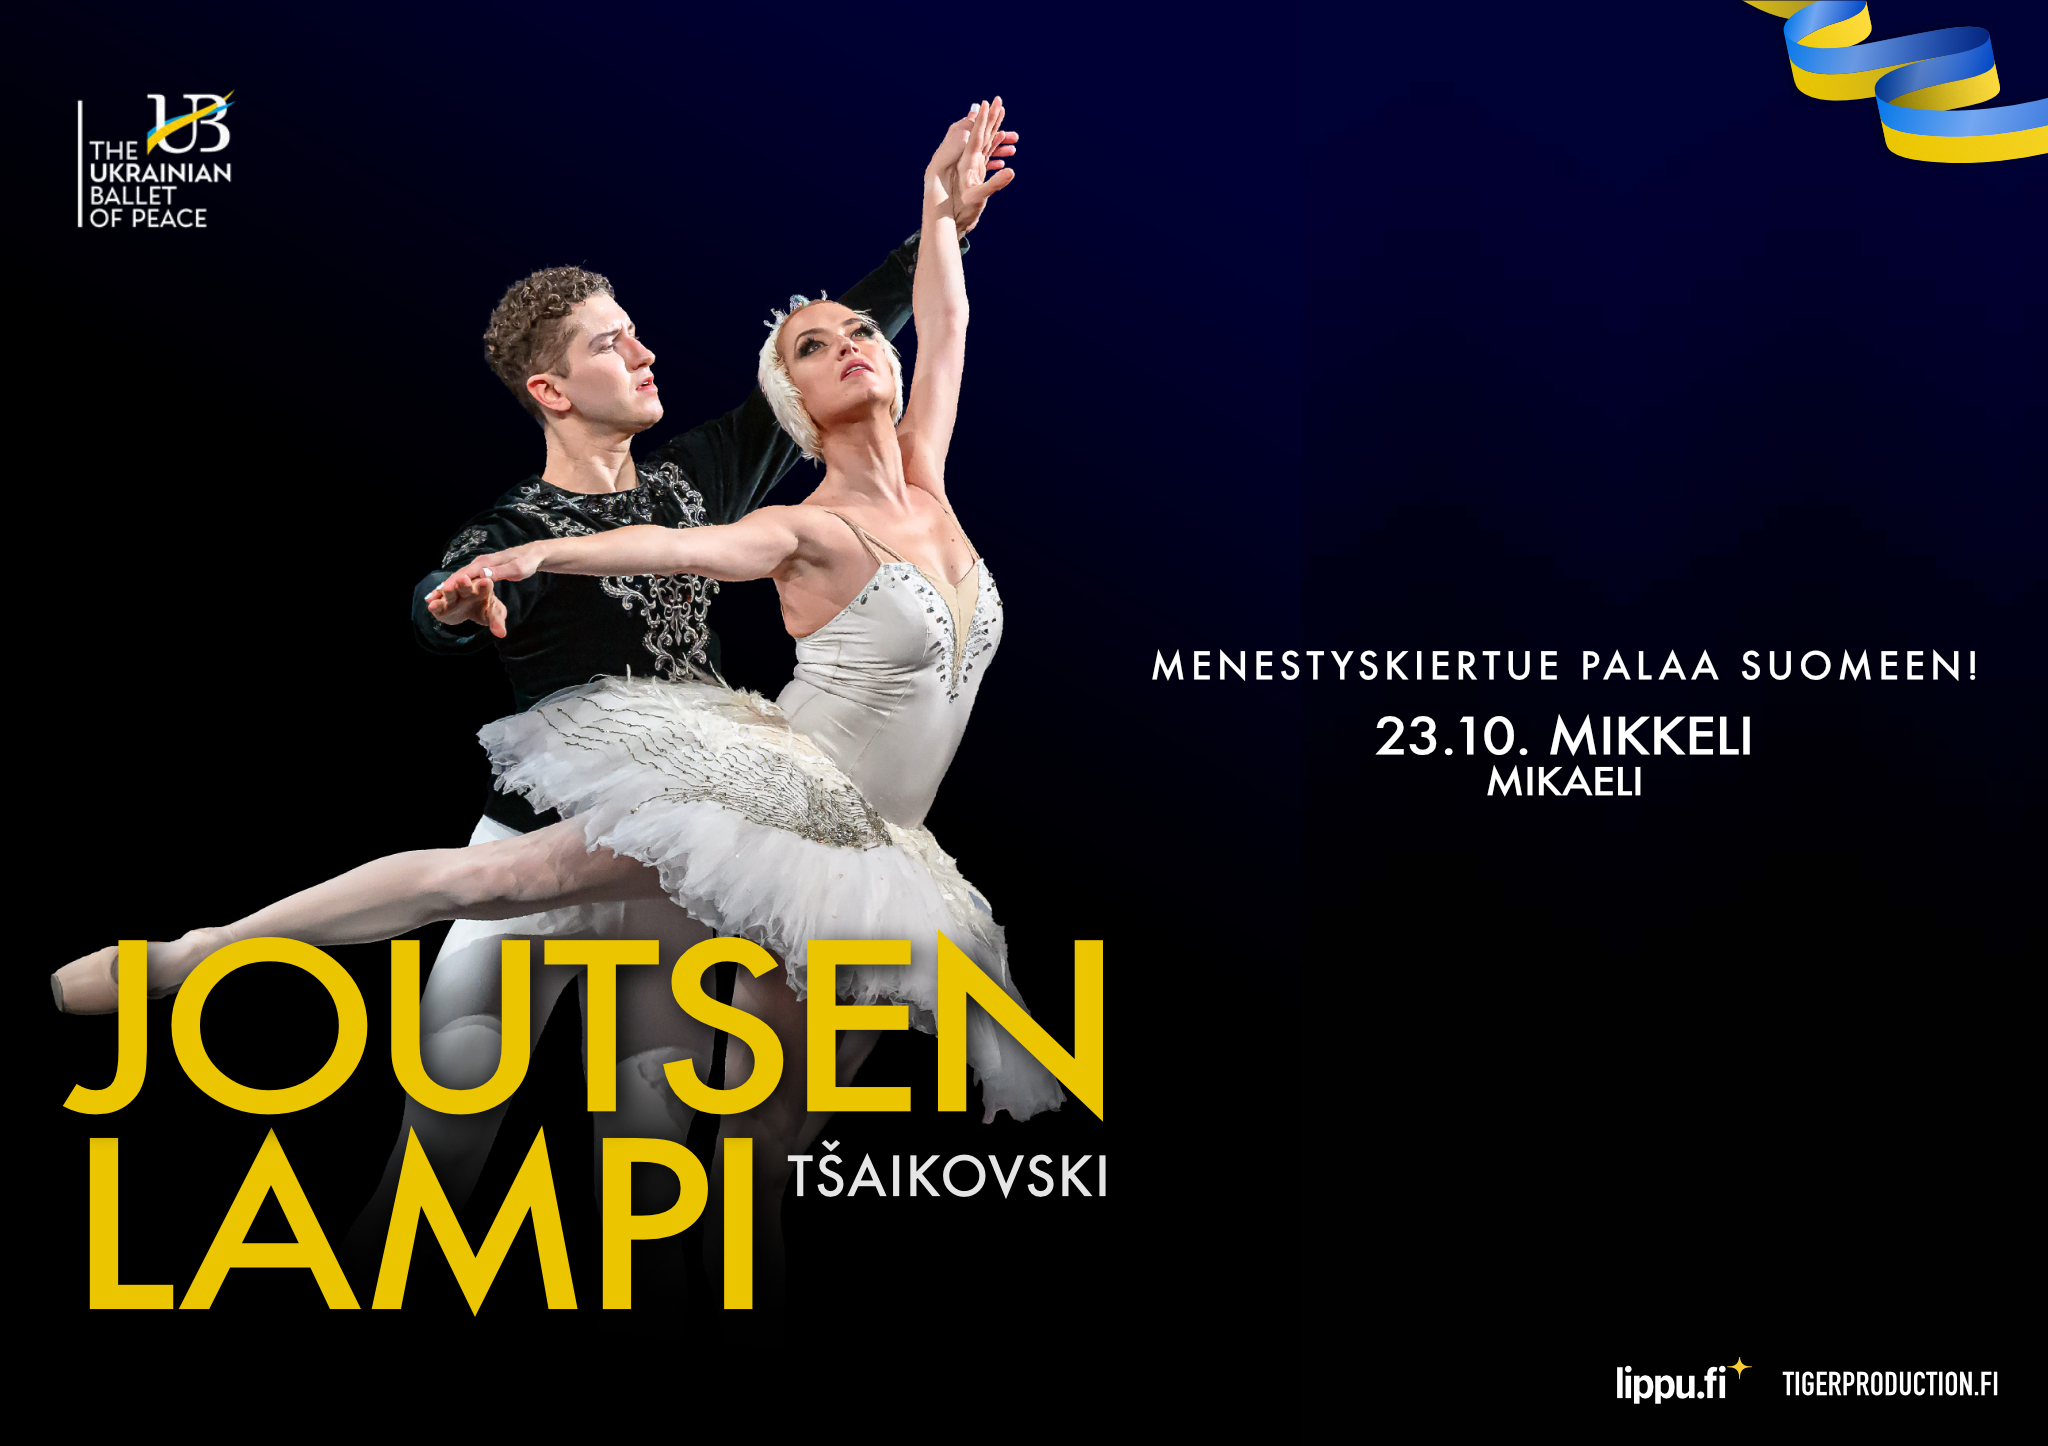 The Ukrainian Ballet of Peace – JOUTSENLAMPI – Konsertti- ja kongressitalo  Mikaeli – Suomen kiinnostavin tapahtumatalo